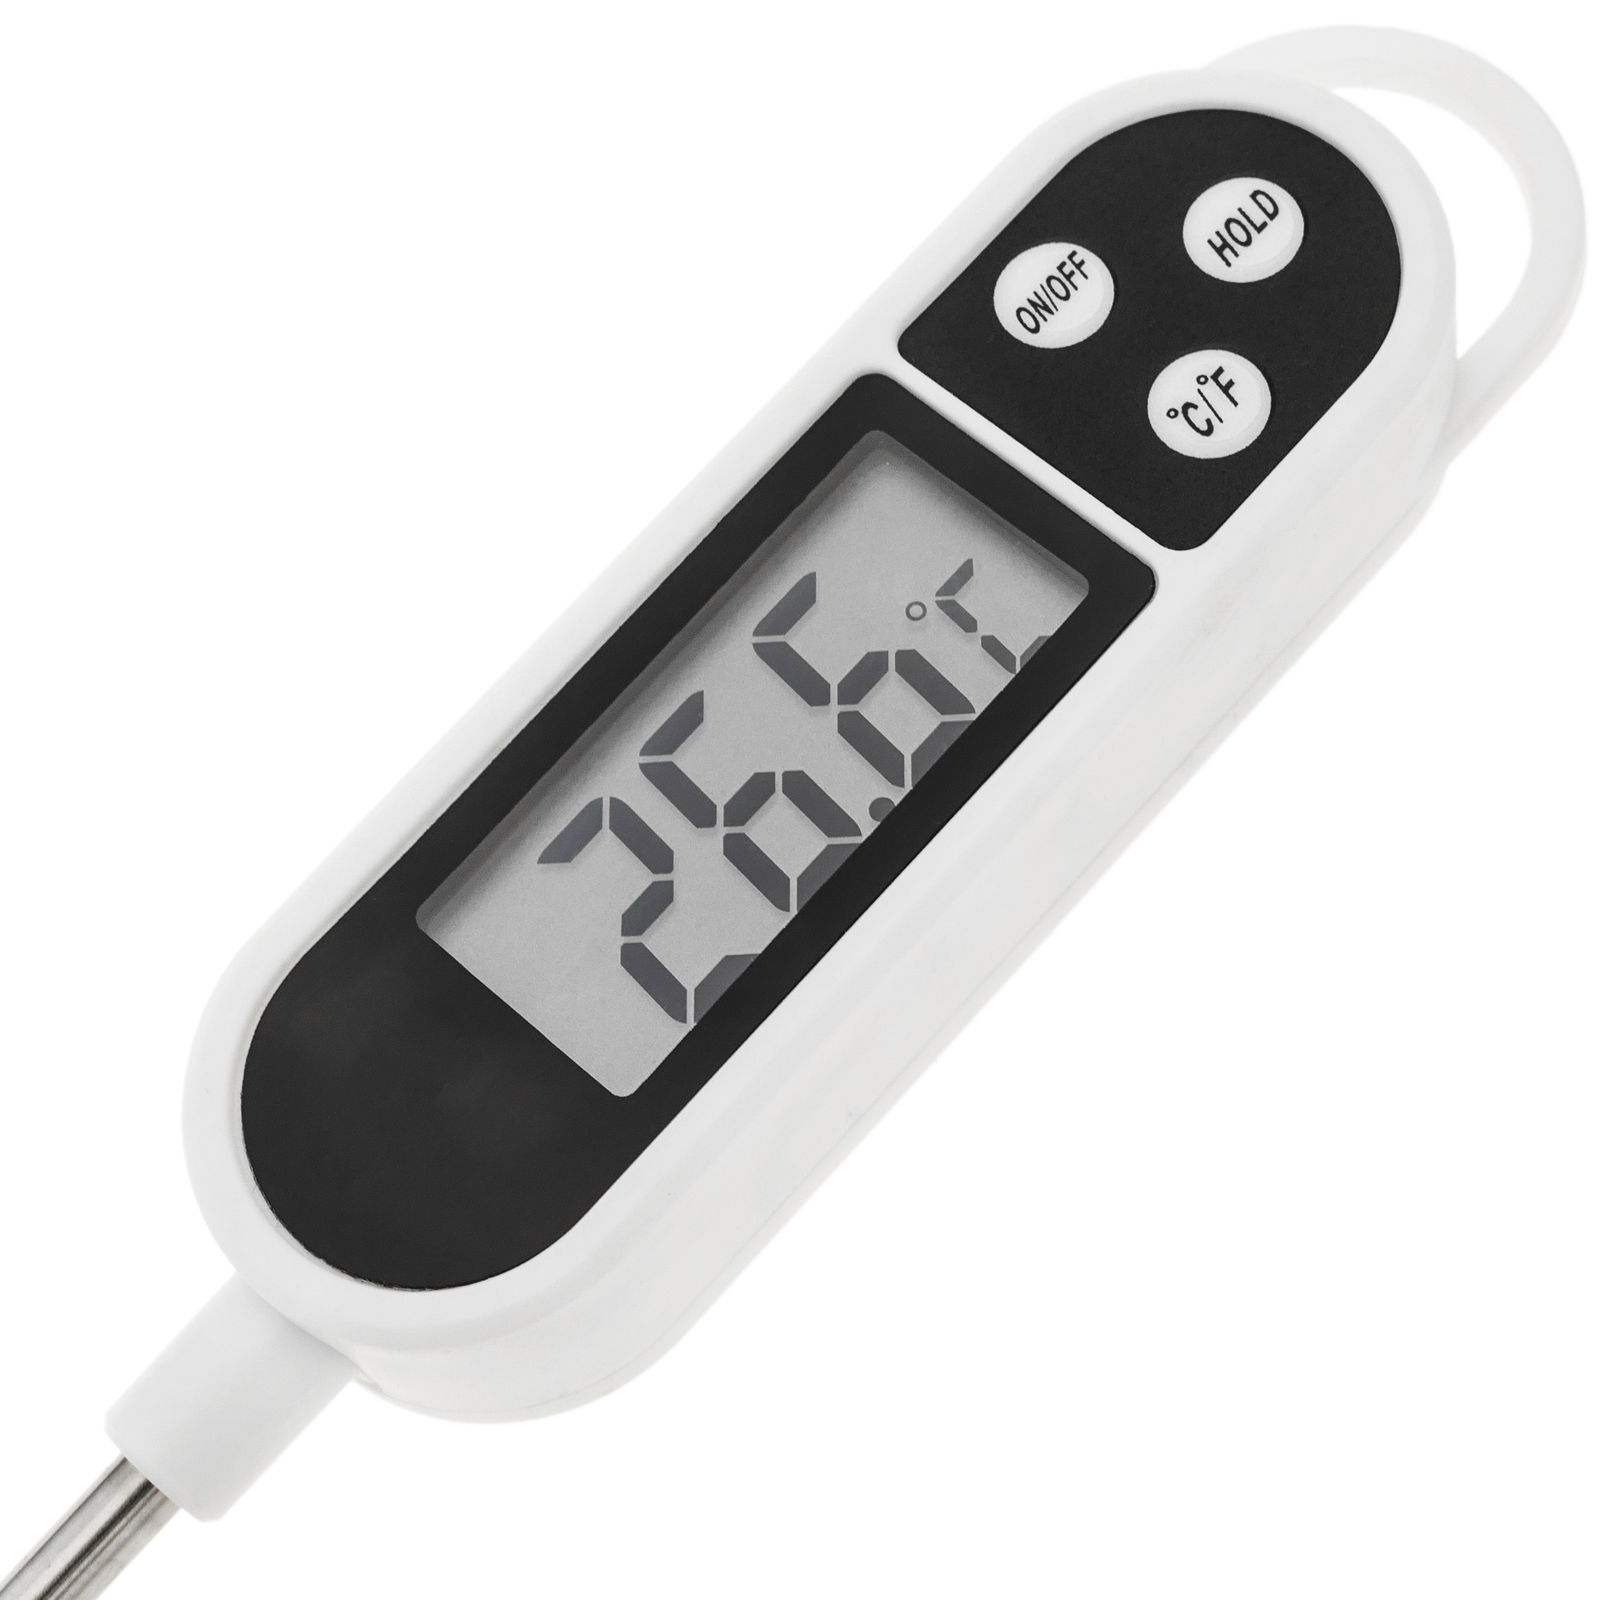 Termometro digitale con sonda rigida per cucina e cibo DW-0211